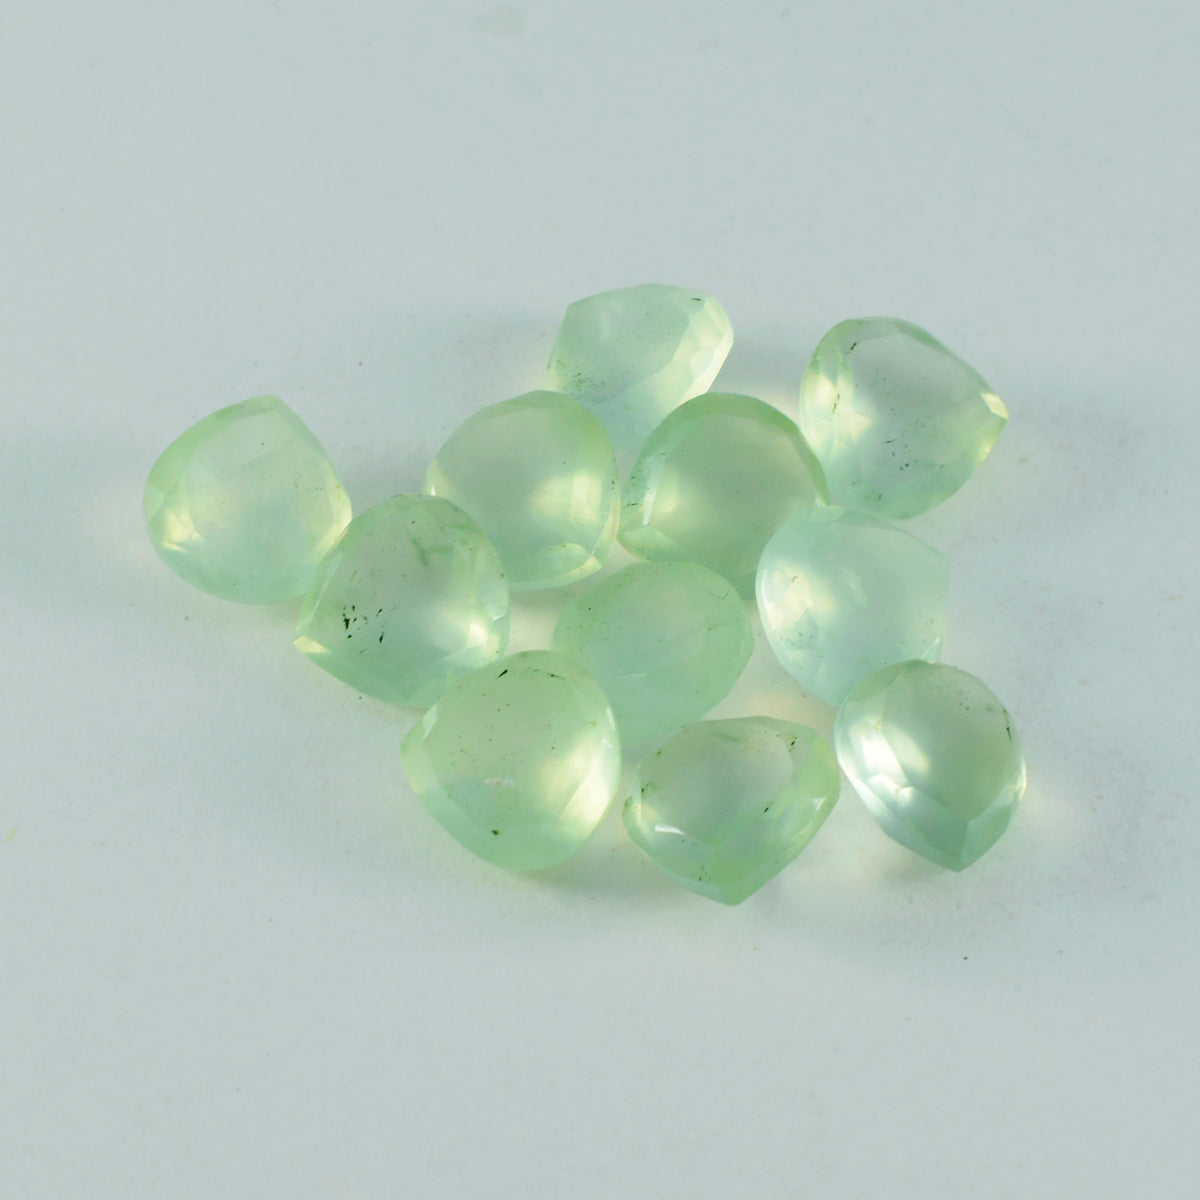 Riyogems 1 pieza prehnita verde facetada 6x6 mm forma de corazón piedra suelta de calidad impresionante